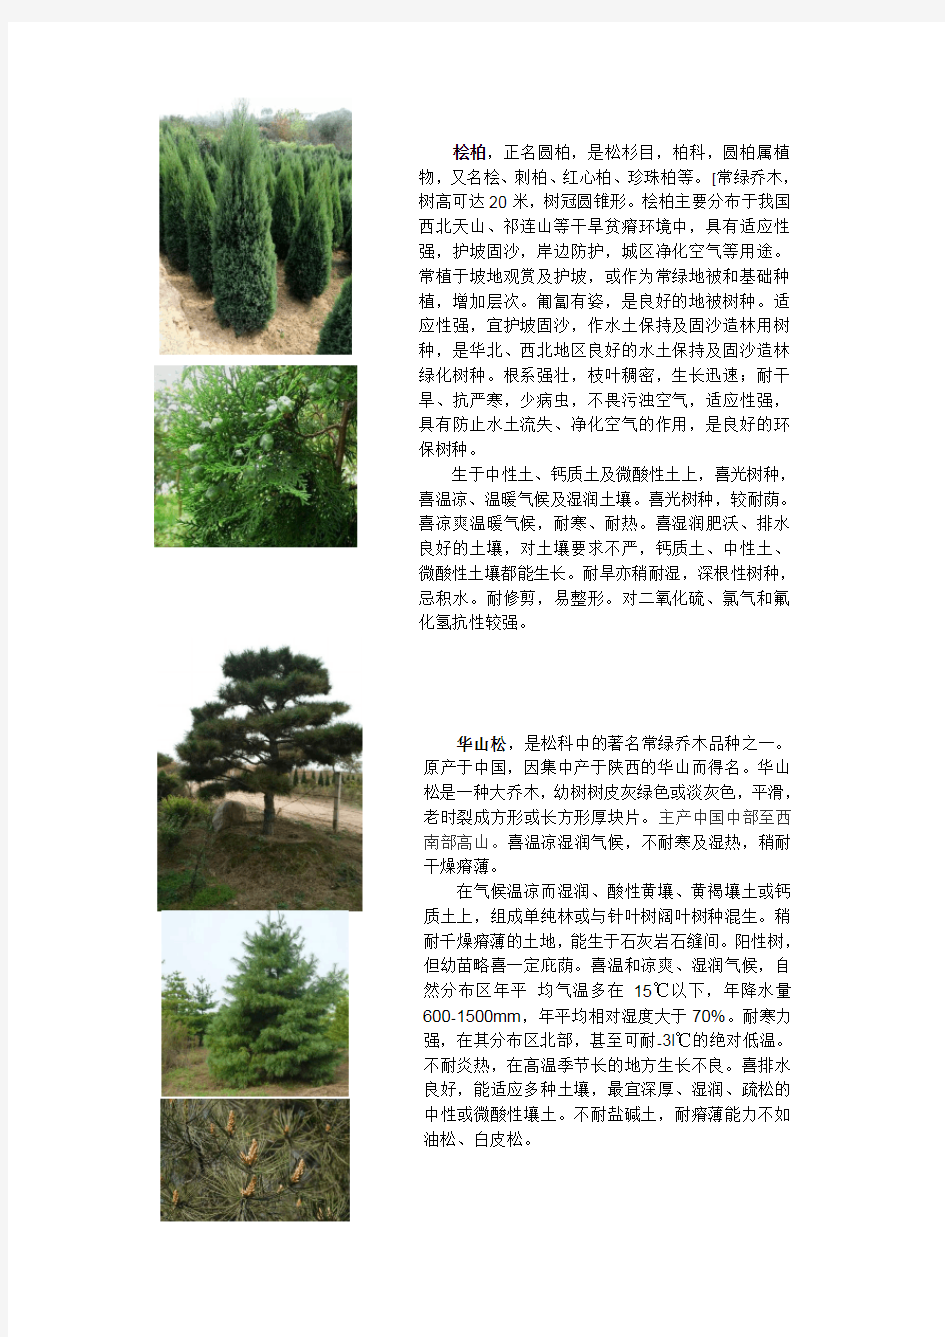 园林景观常用植物配置图